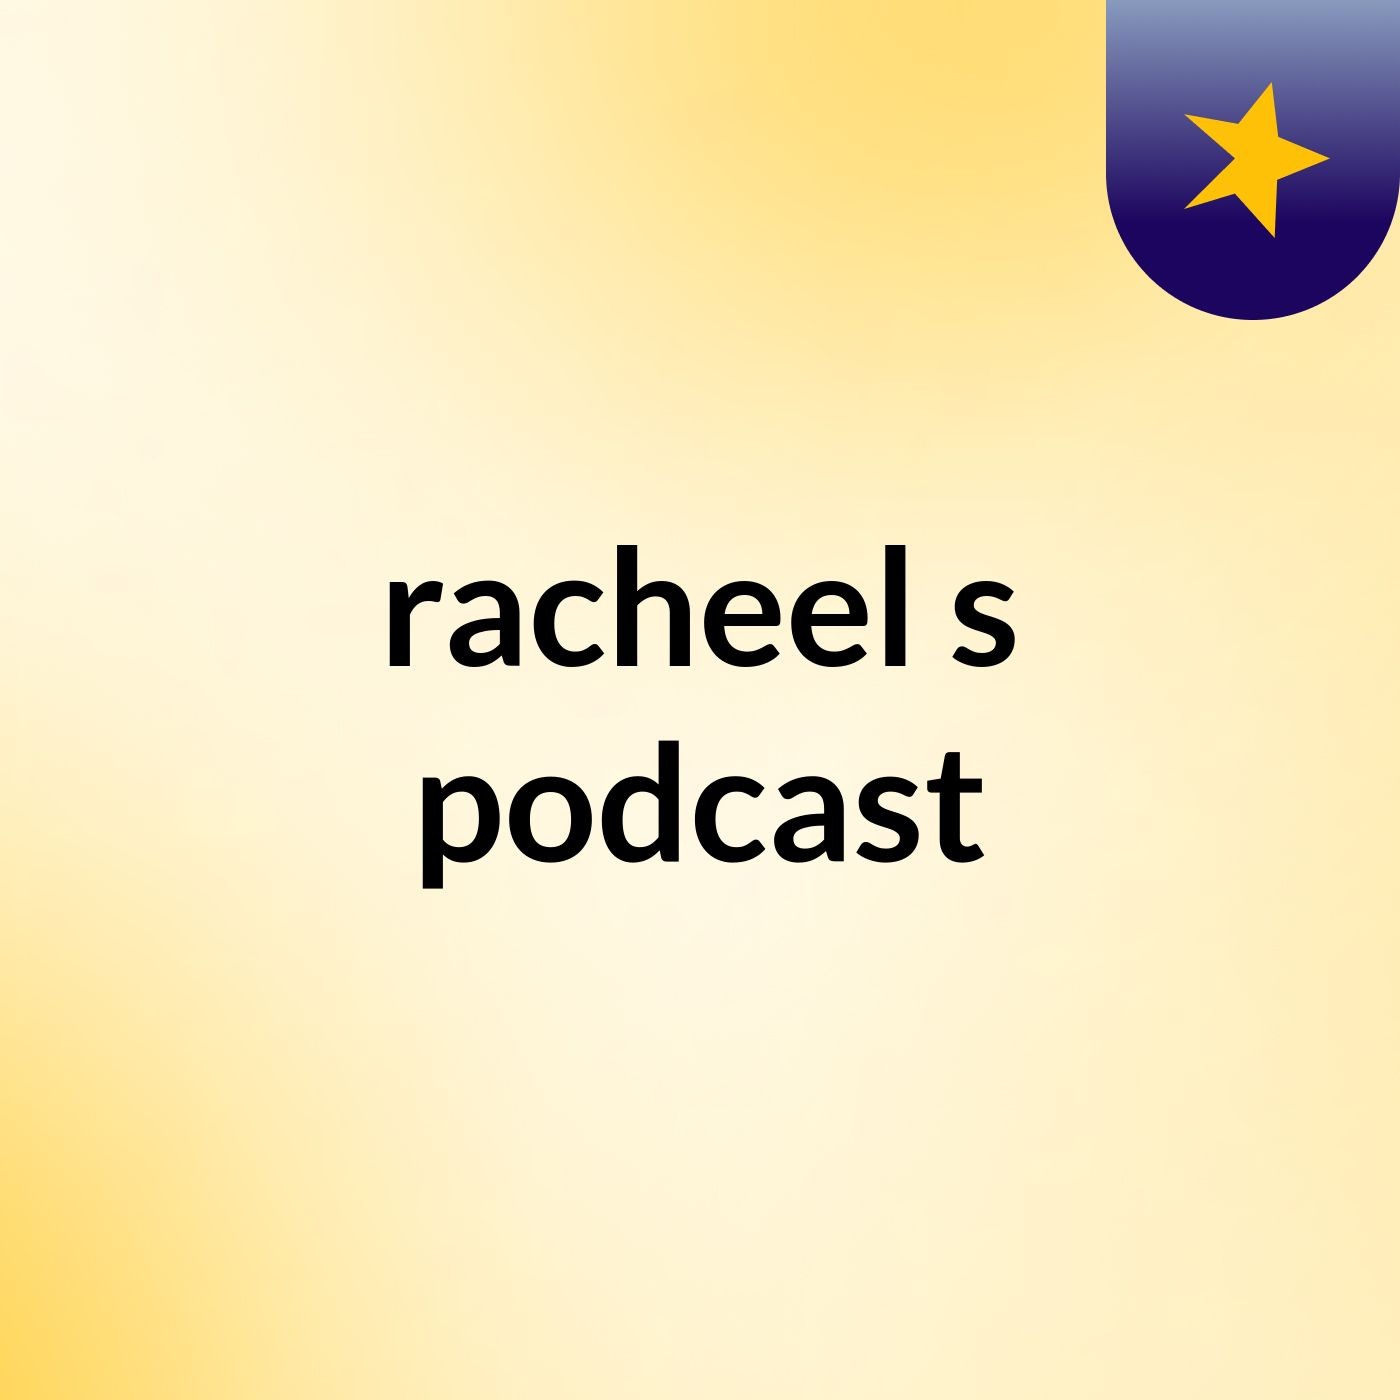 Episode 2 - racheel's podcast